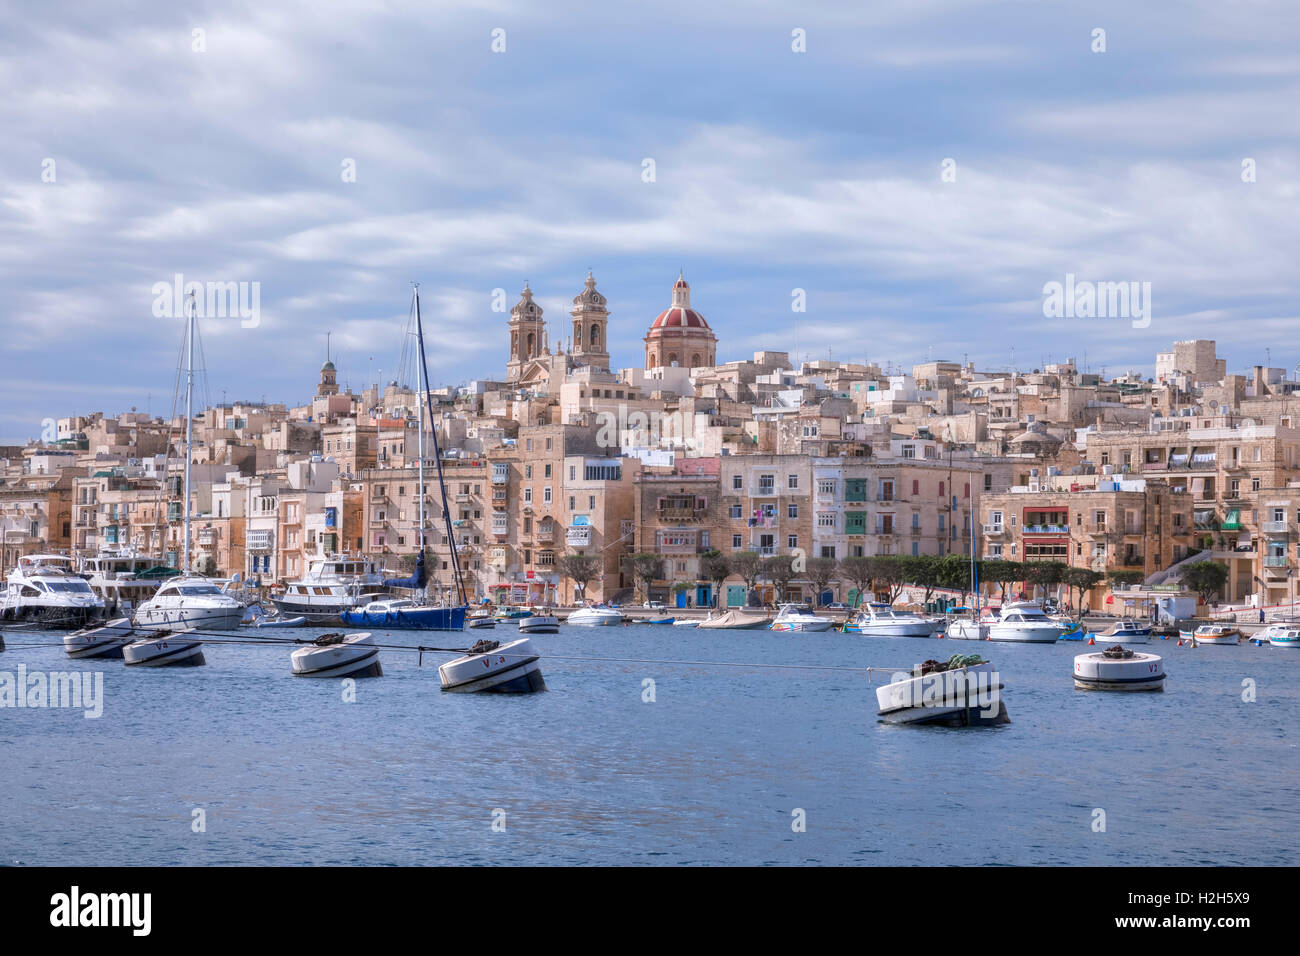 Three Cities, Valletta, Malta Stock Photo